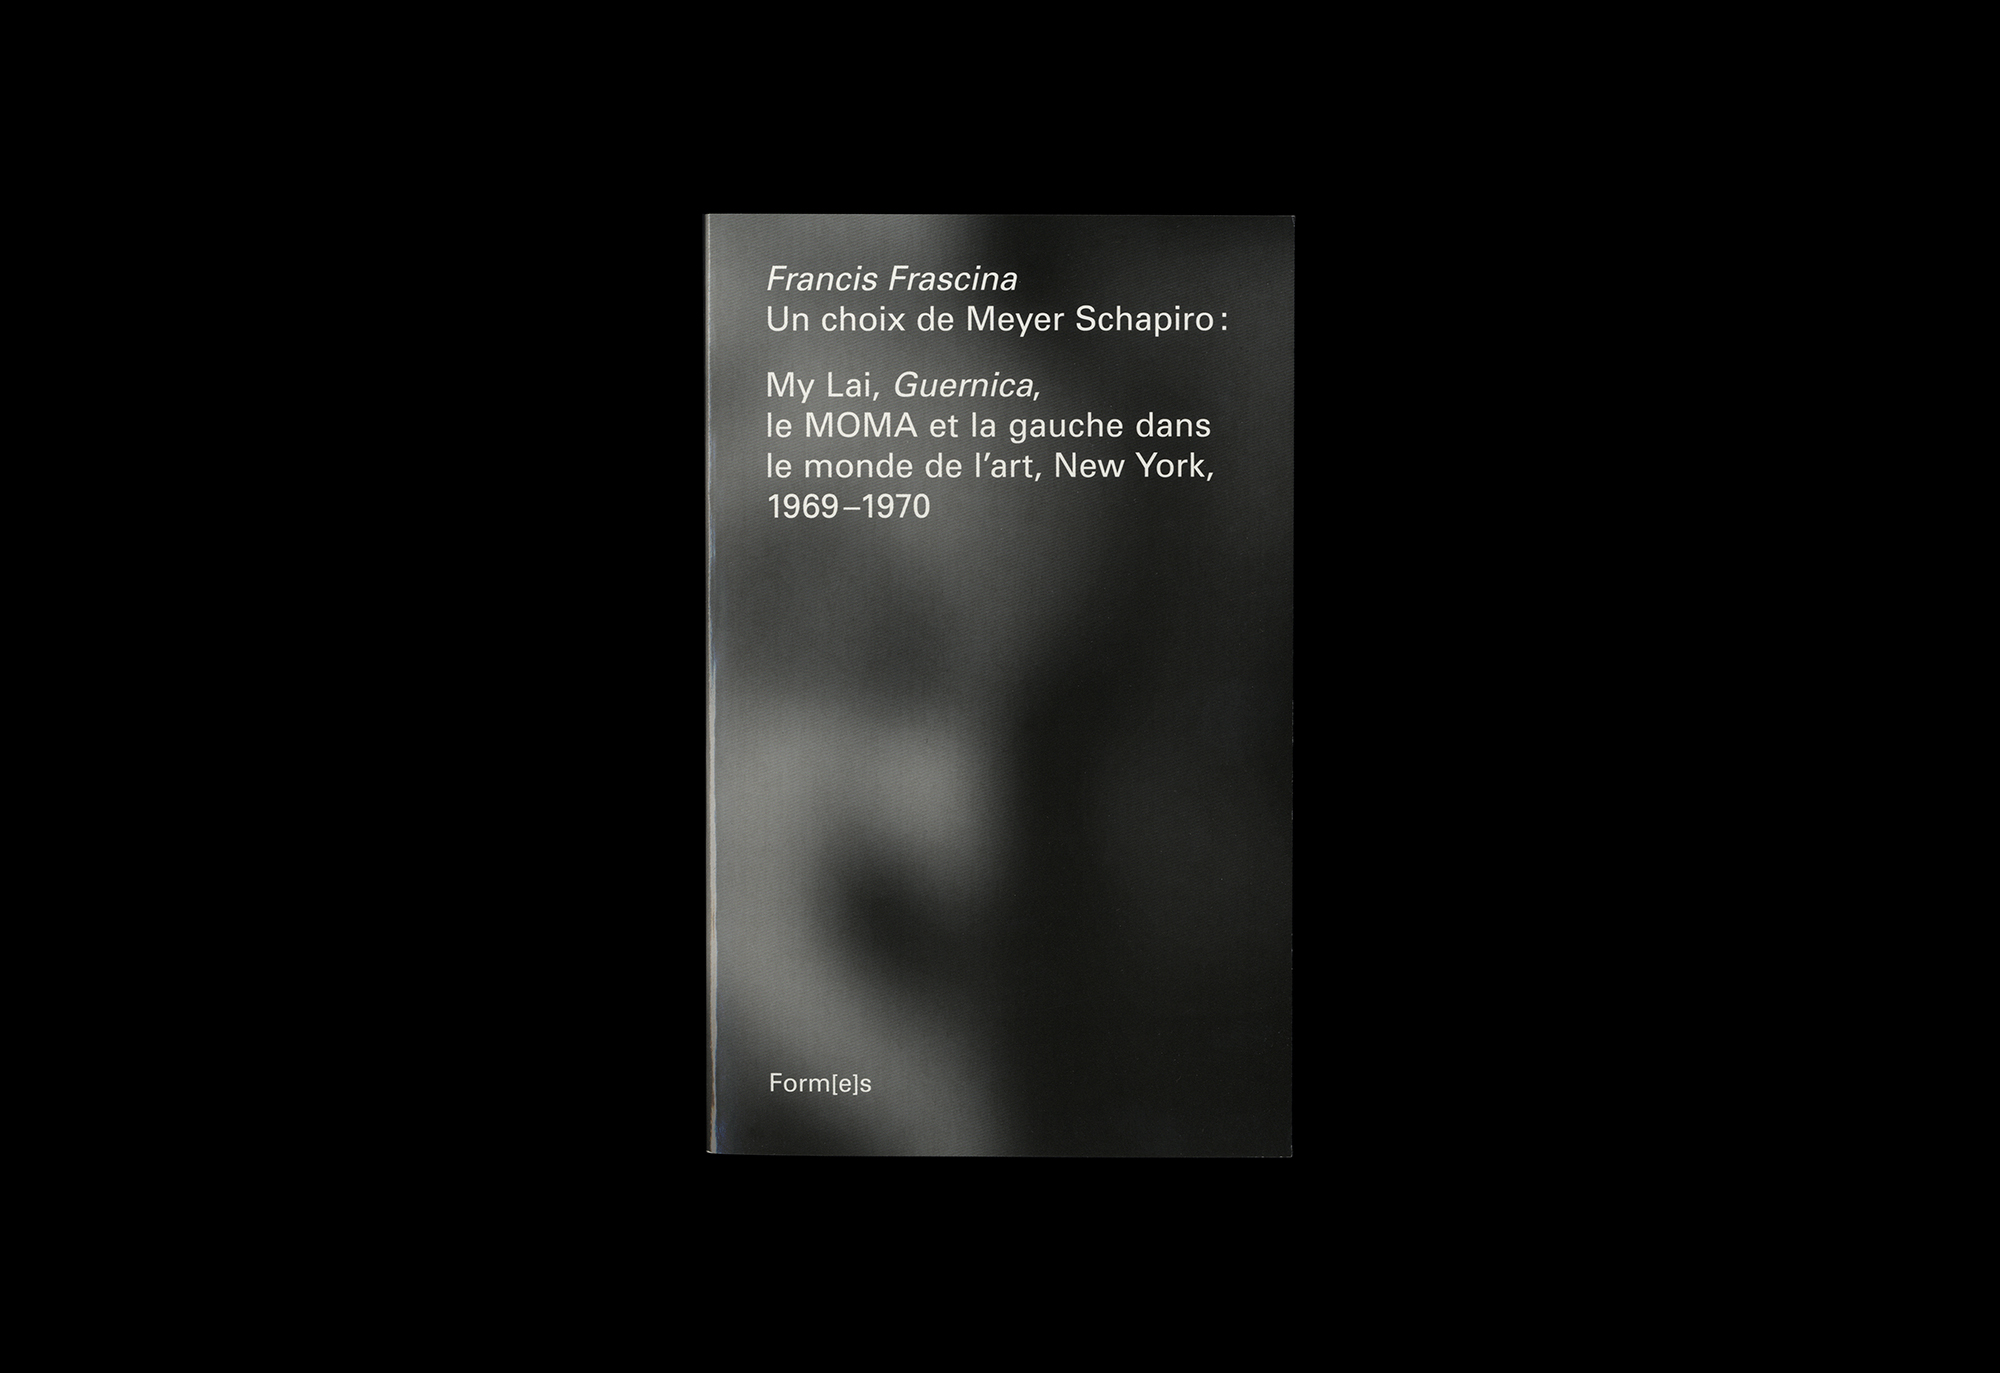 Cover image: Francis Frascina  Un choix de Meyer Schapiro, My Lai, Guernica, le Moma et la gauche dans le monde d